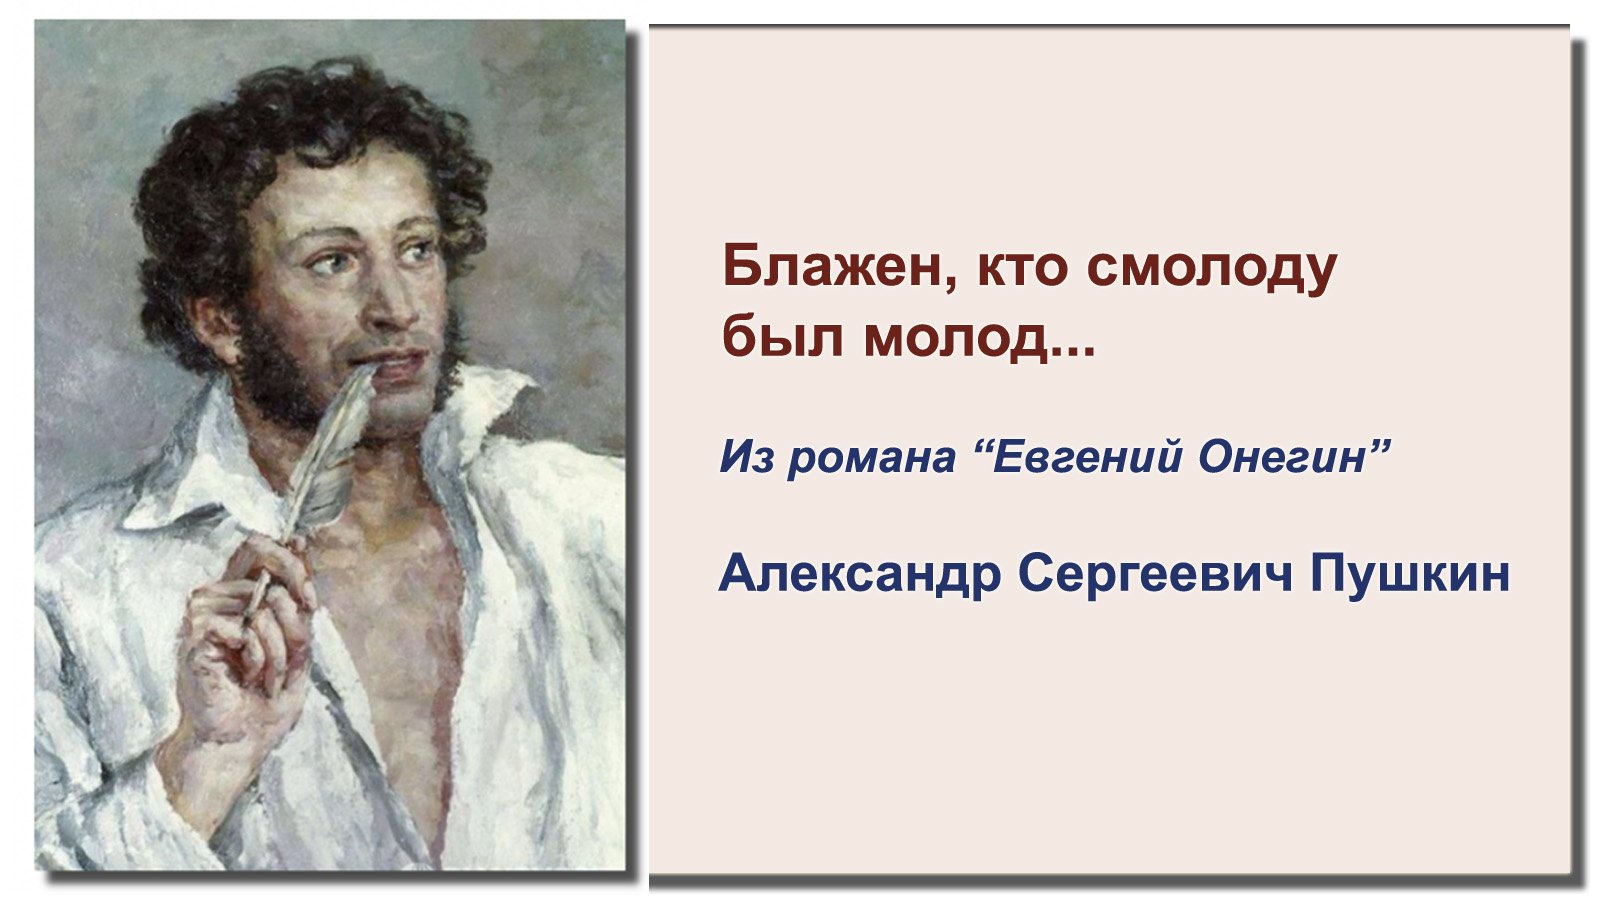 Александр Сергеевич Пушкин пишет